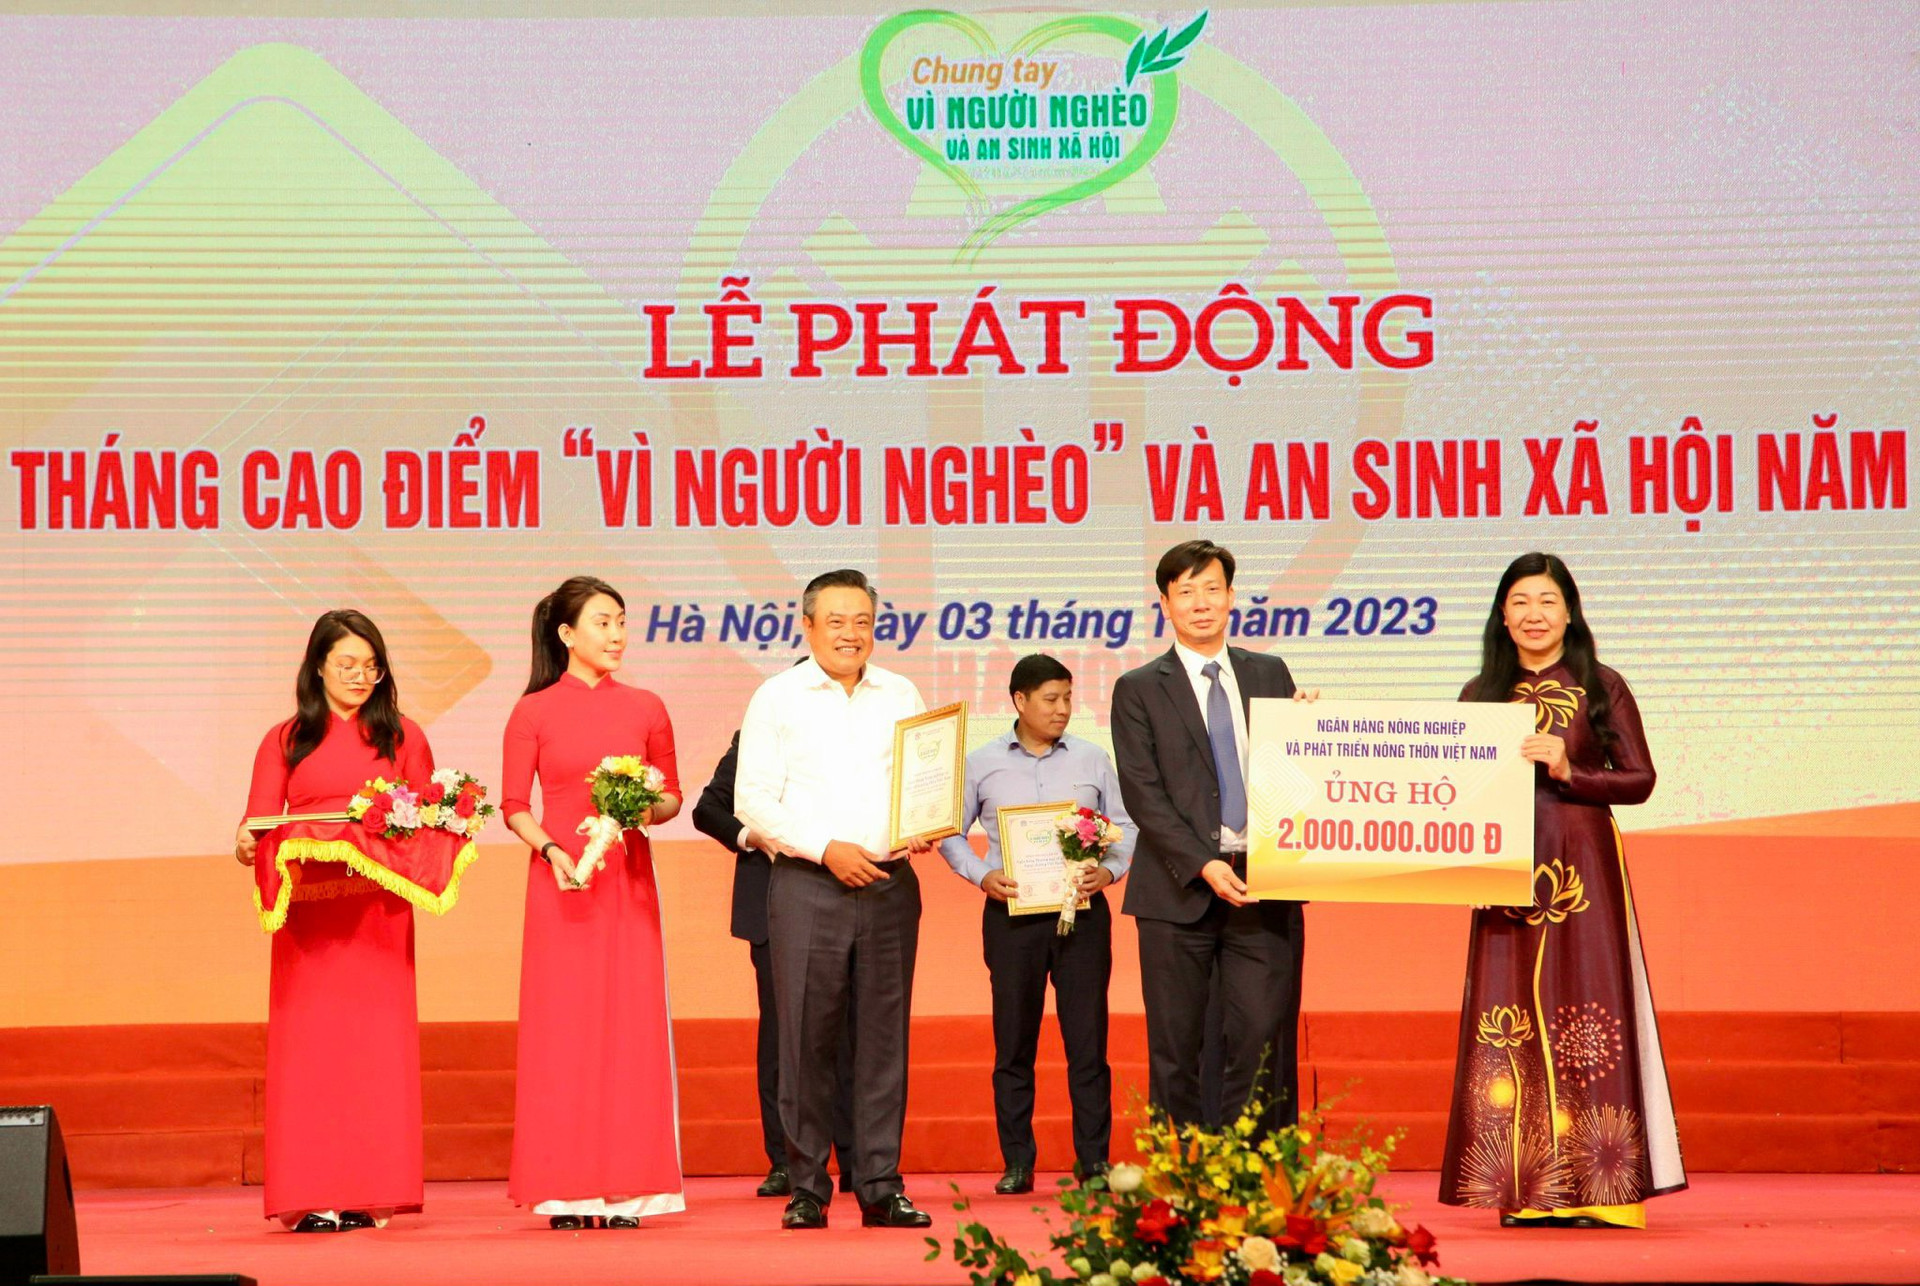 Lãnh đạo UBND - Ủy ban MTTQ Việt Nam thành phố Hà Nội tiếp nhận ủng hộ từ các đơn vị.